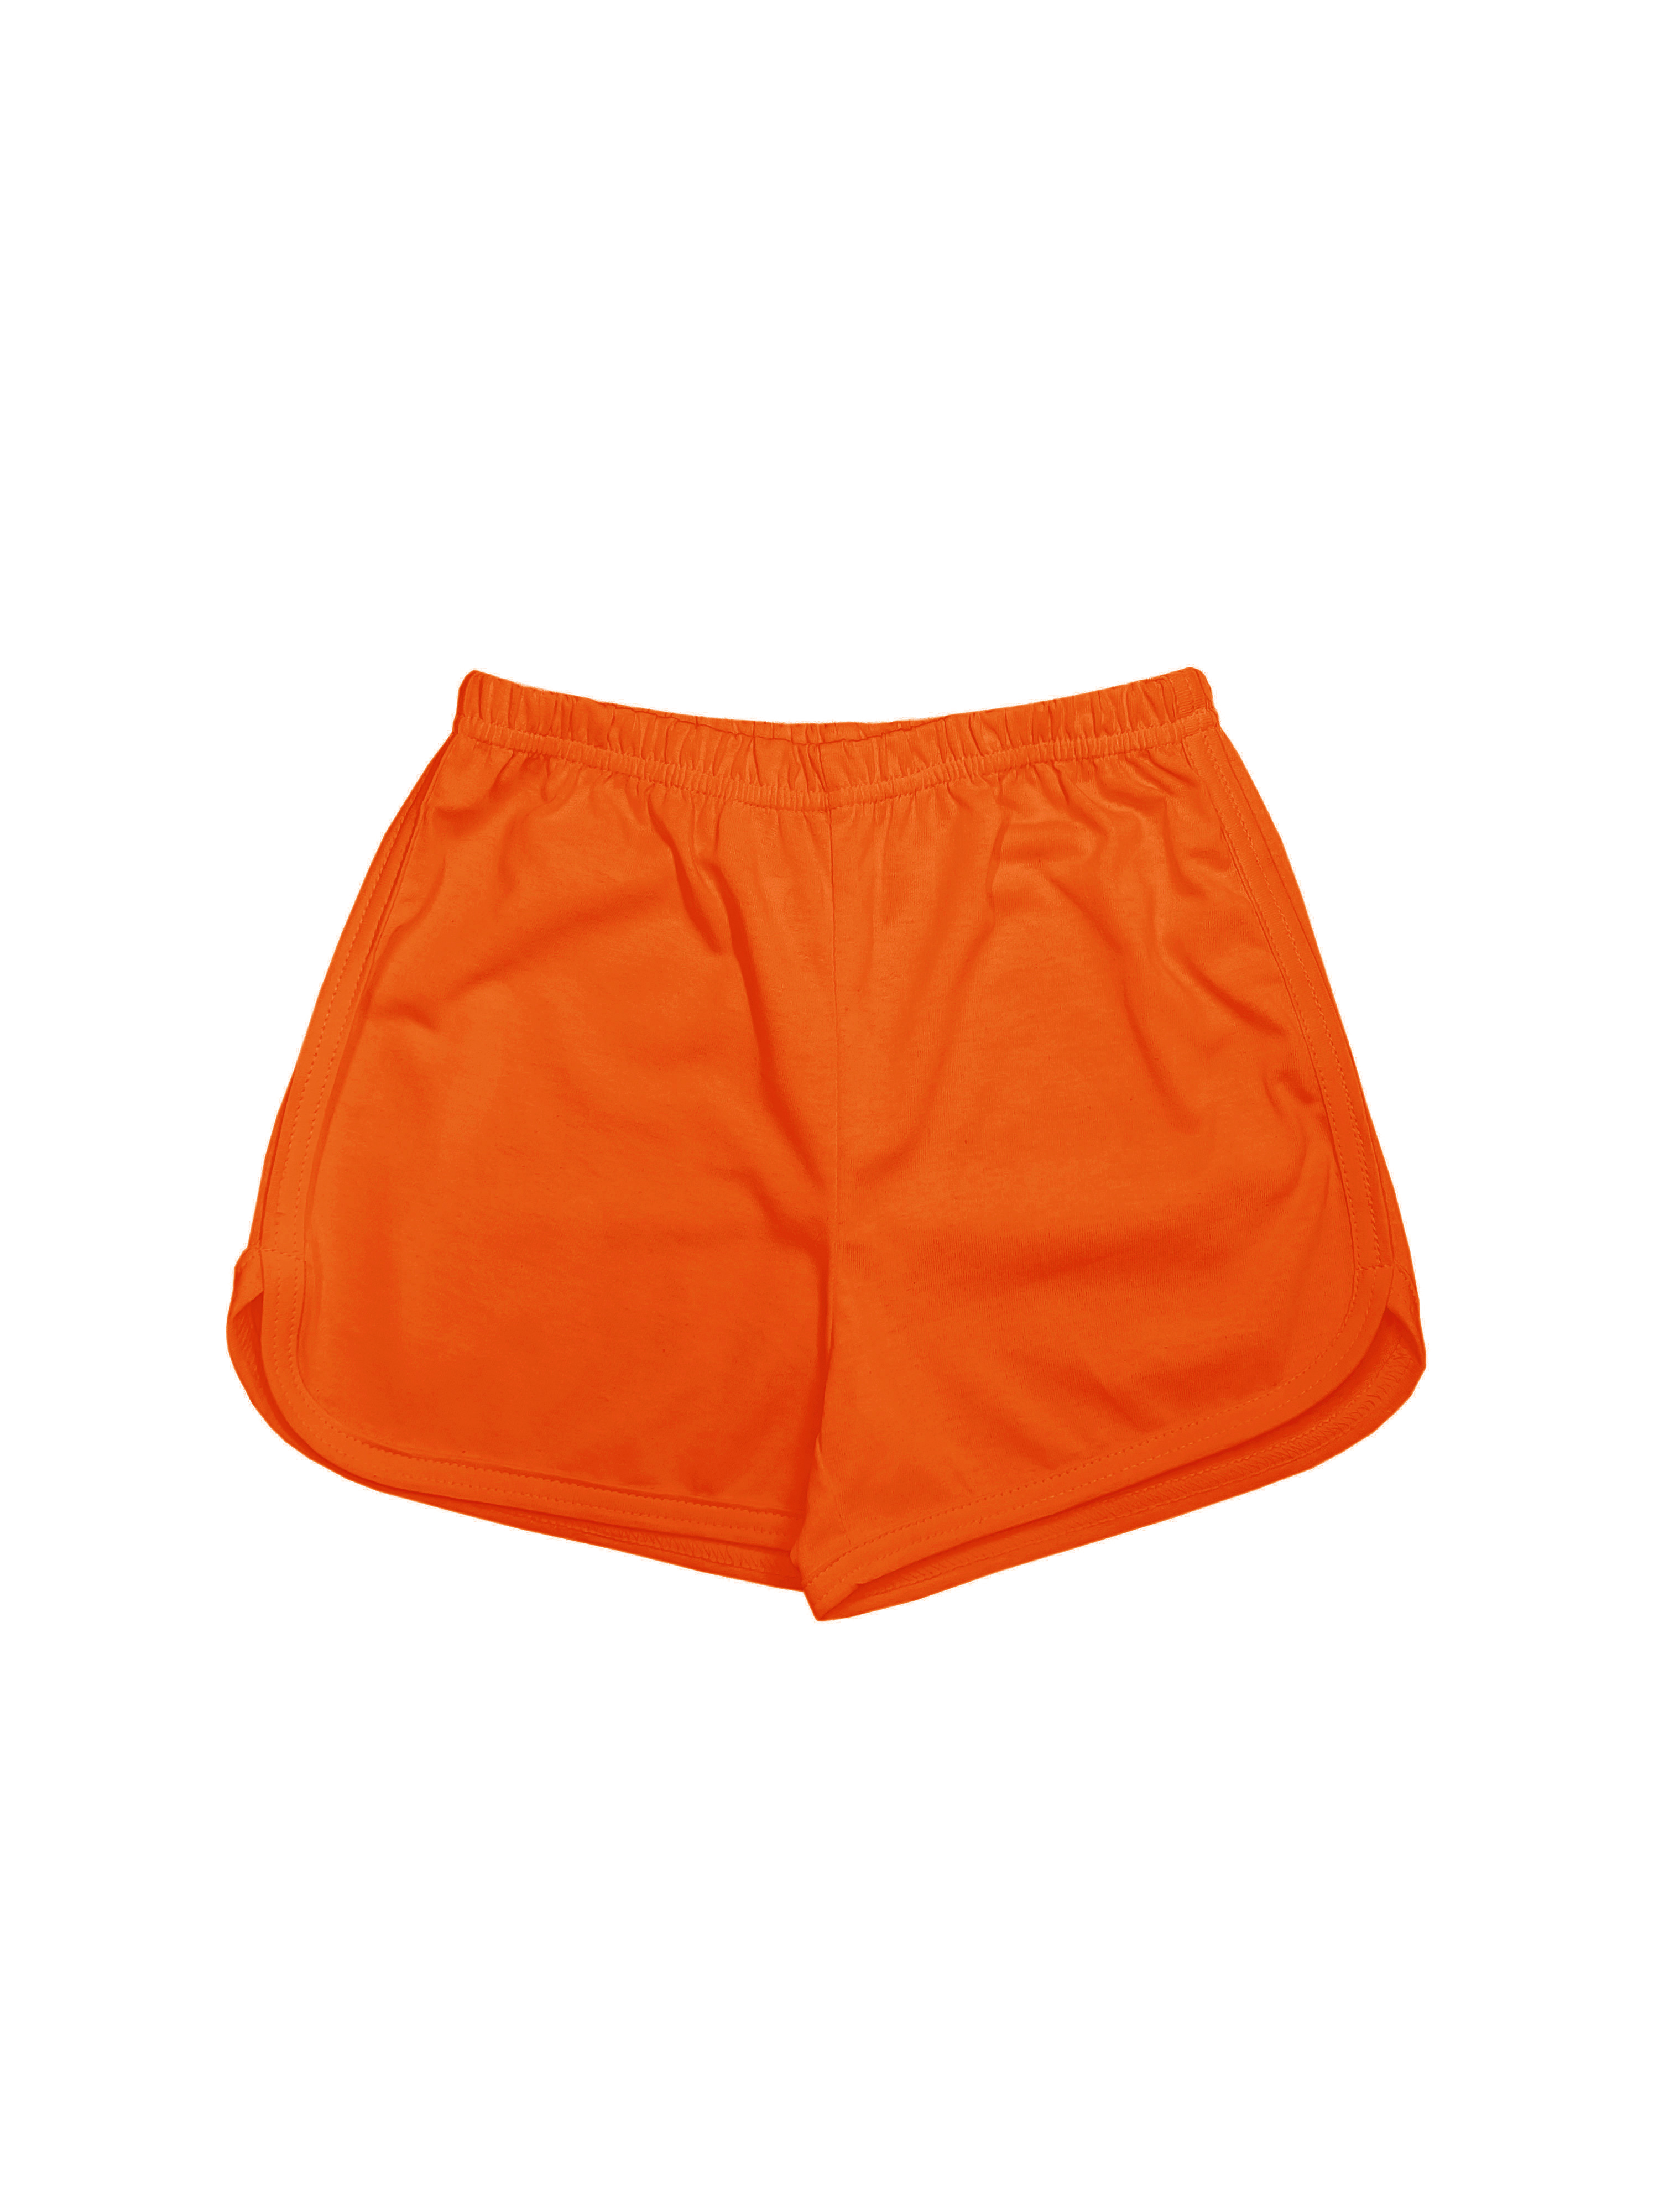 Шорты детские Детрик ШД-0322, оранжевый, 116 мяч для художественной гимнастики однотонный d19 см пвх agp 19 06 оранжевый с блестками